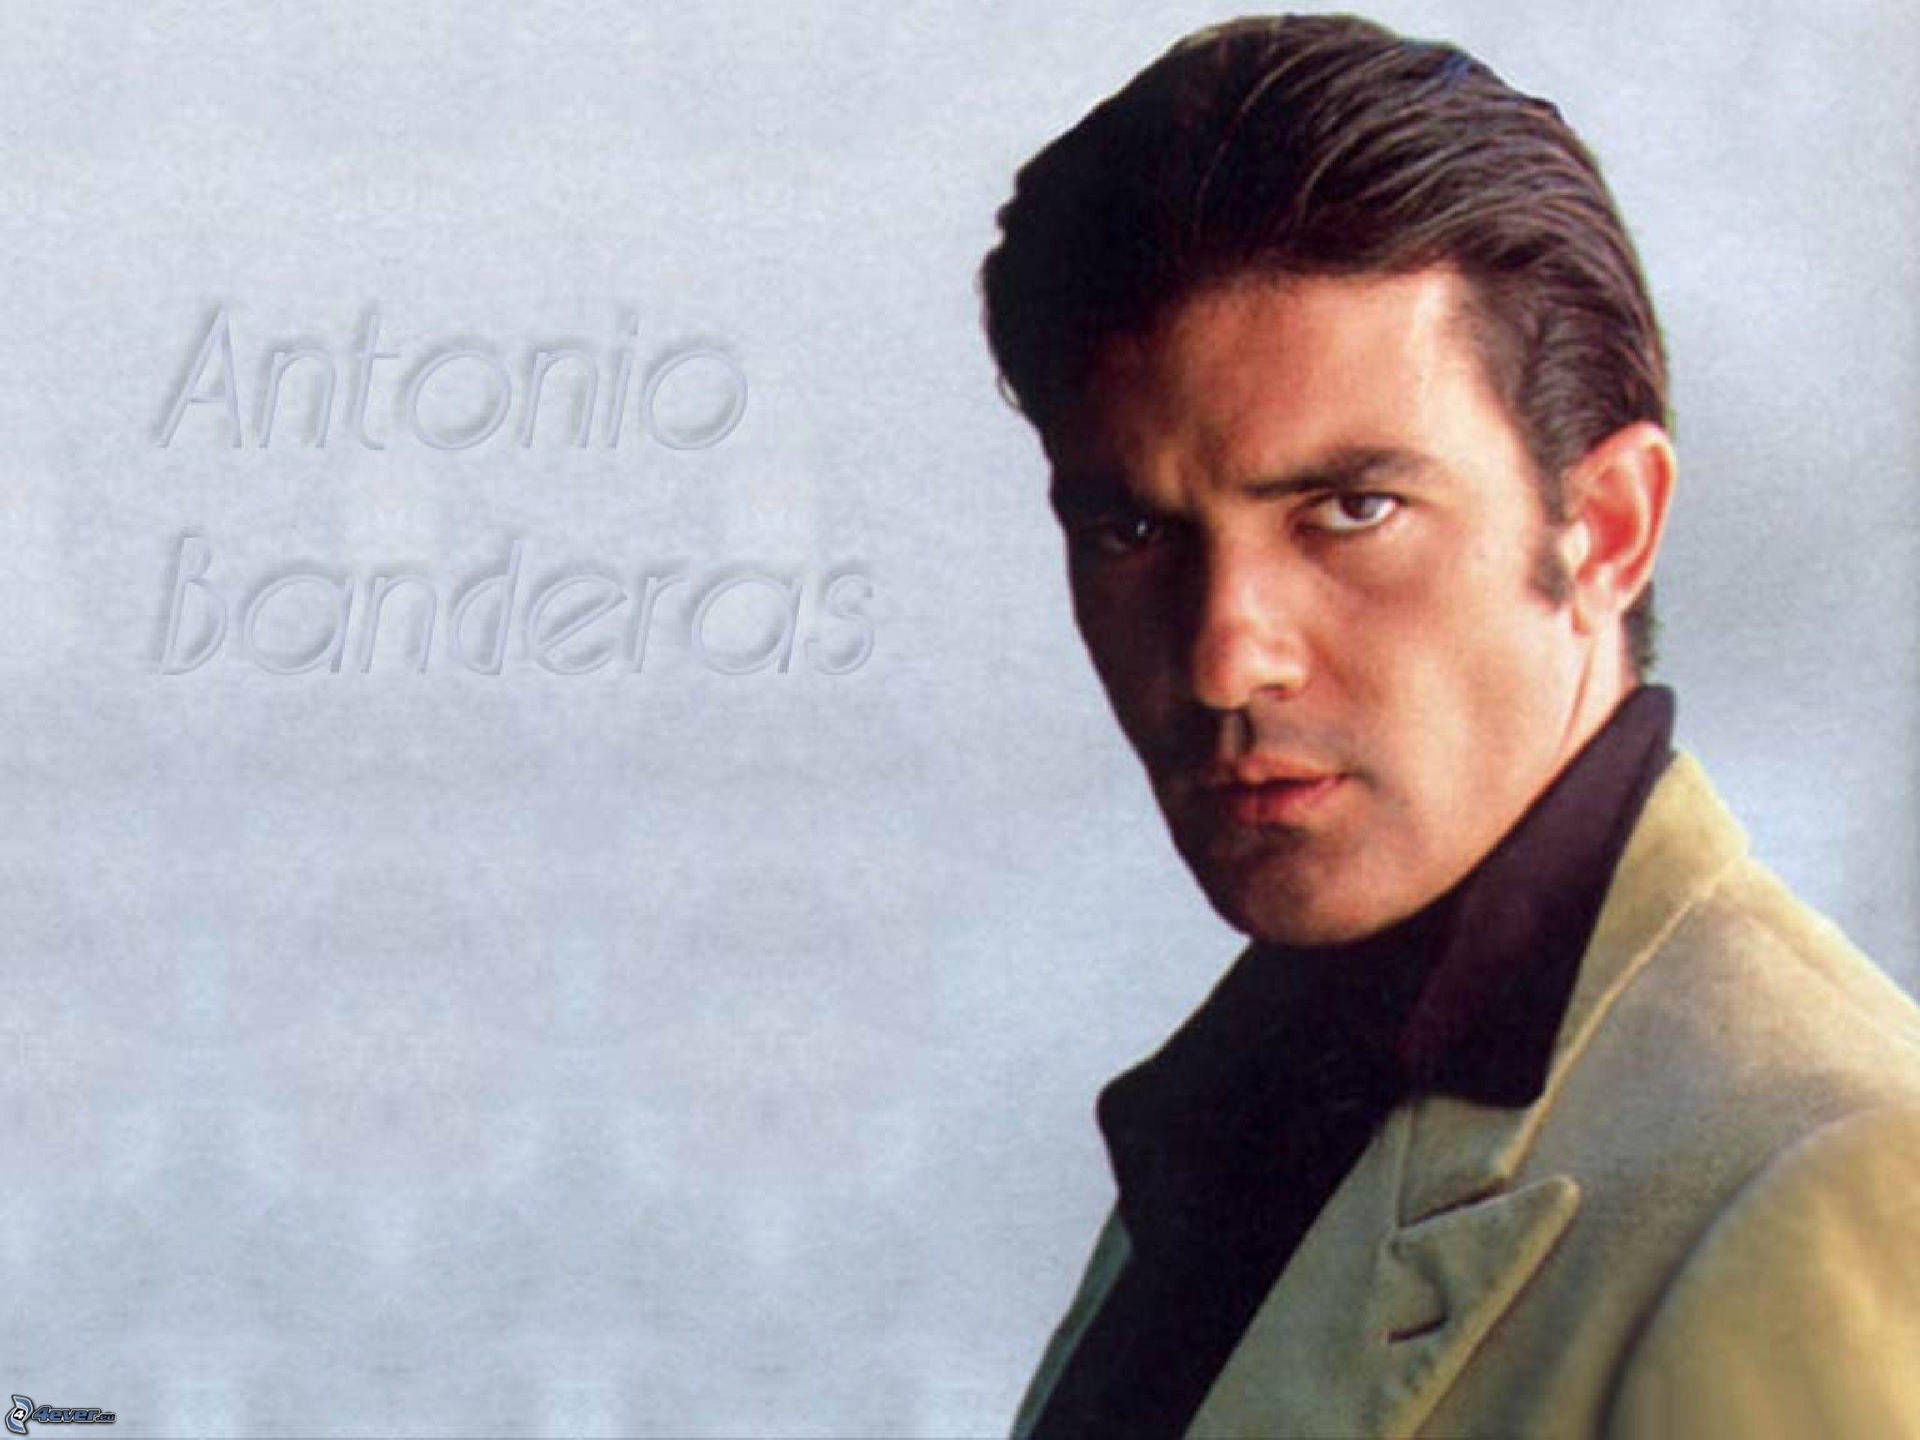 Actor Antonio Banderas Poster